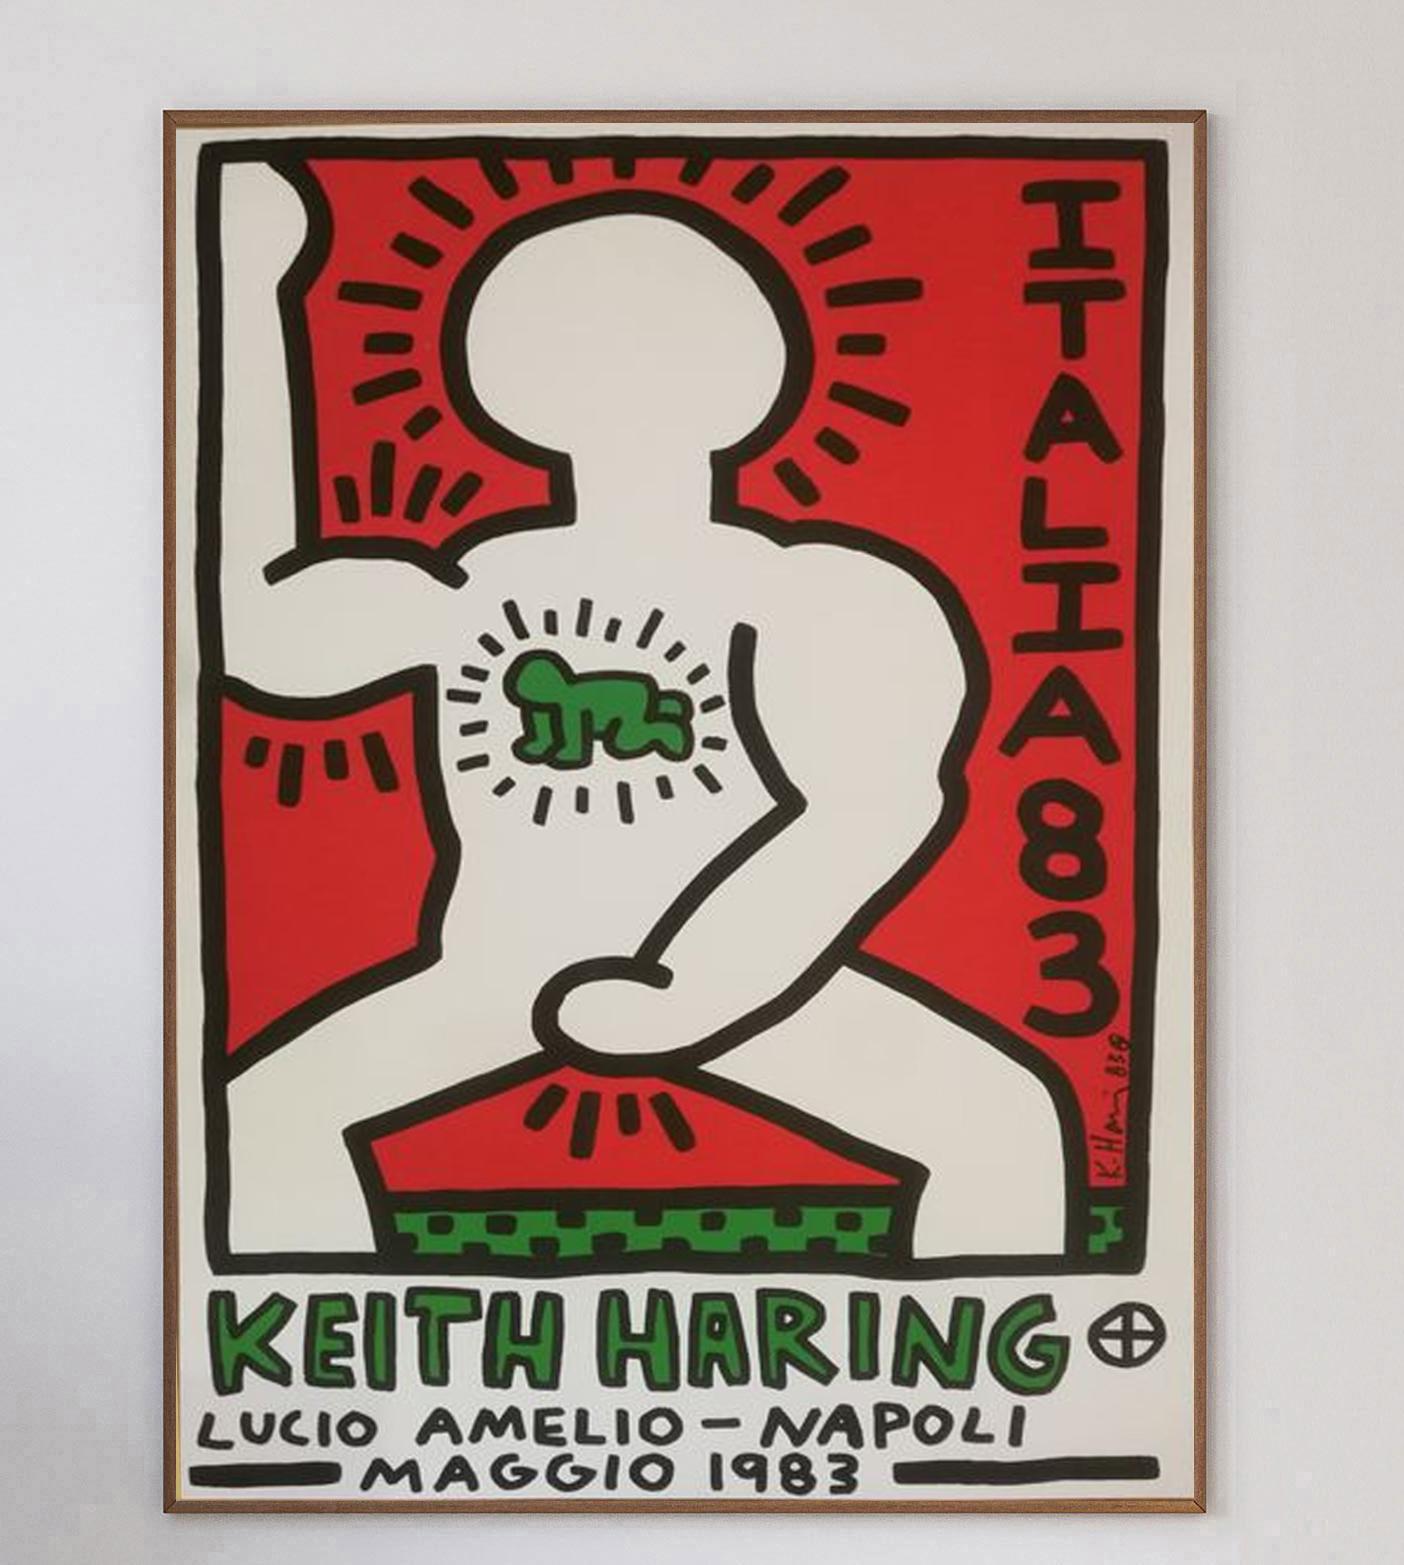 Wunderschöne Lithografie, die für die Ausstellung von Keith Haring in der Galerie Lucio Amelio in Neapel, Italien, im Mai 1983 wirbt. Das Werk ist auf schwerem Kunstdruckpapier gedruckt und auf der Platte vom Künstler signiert und datiert. Mit den